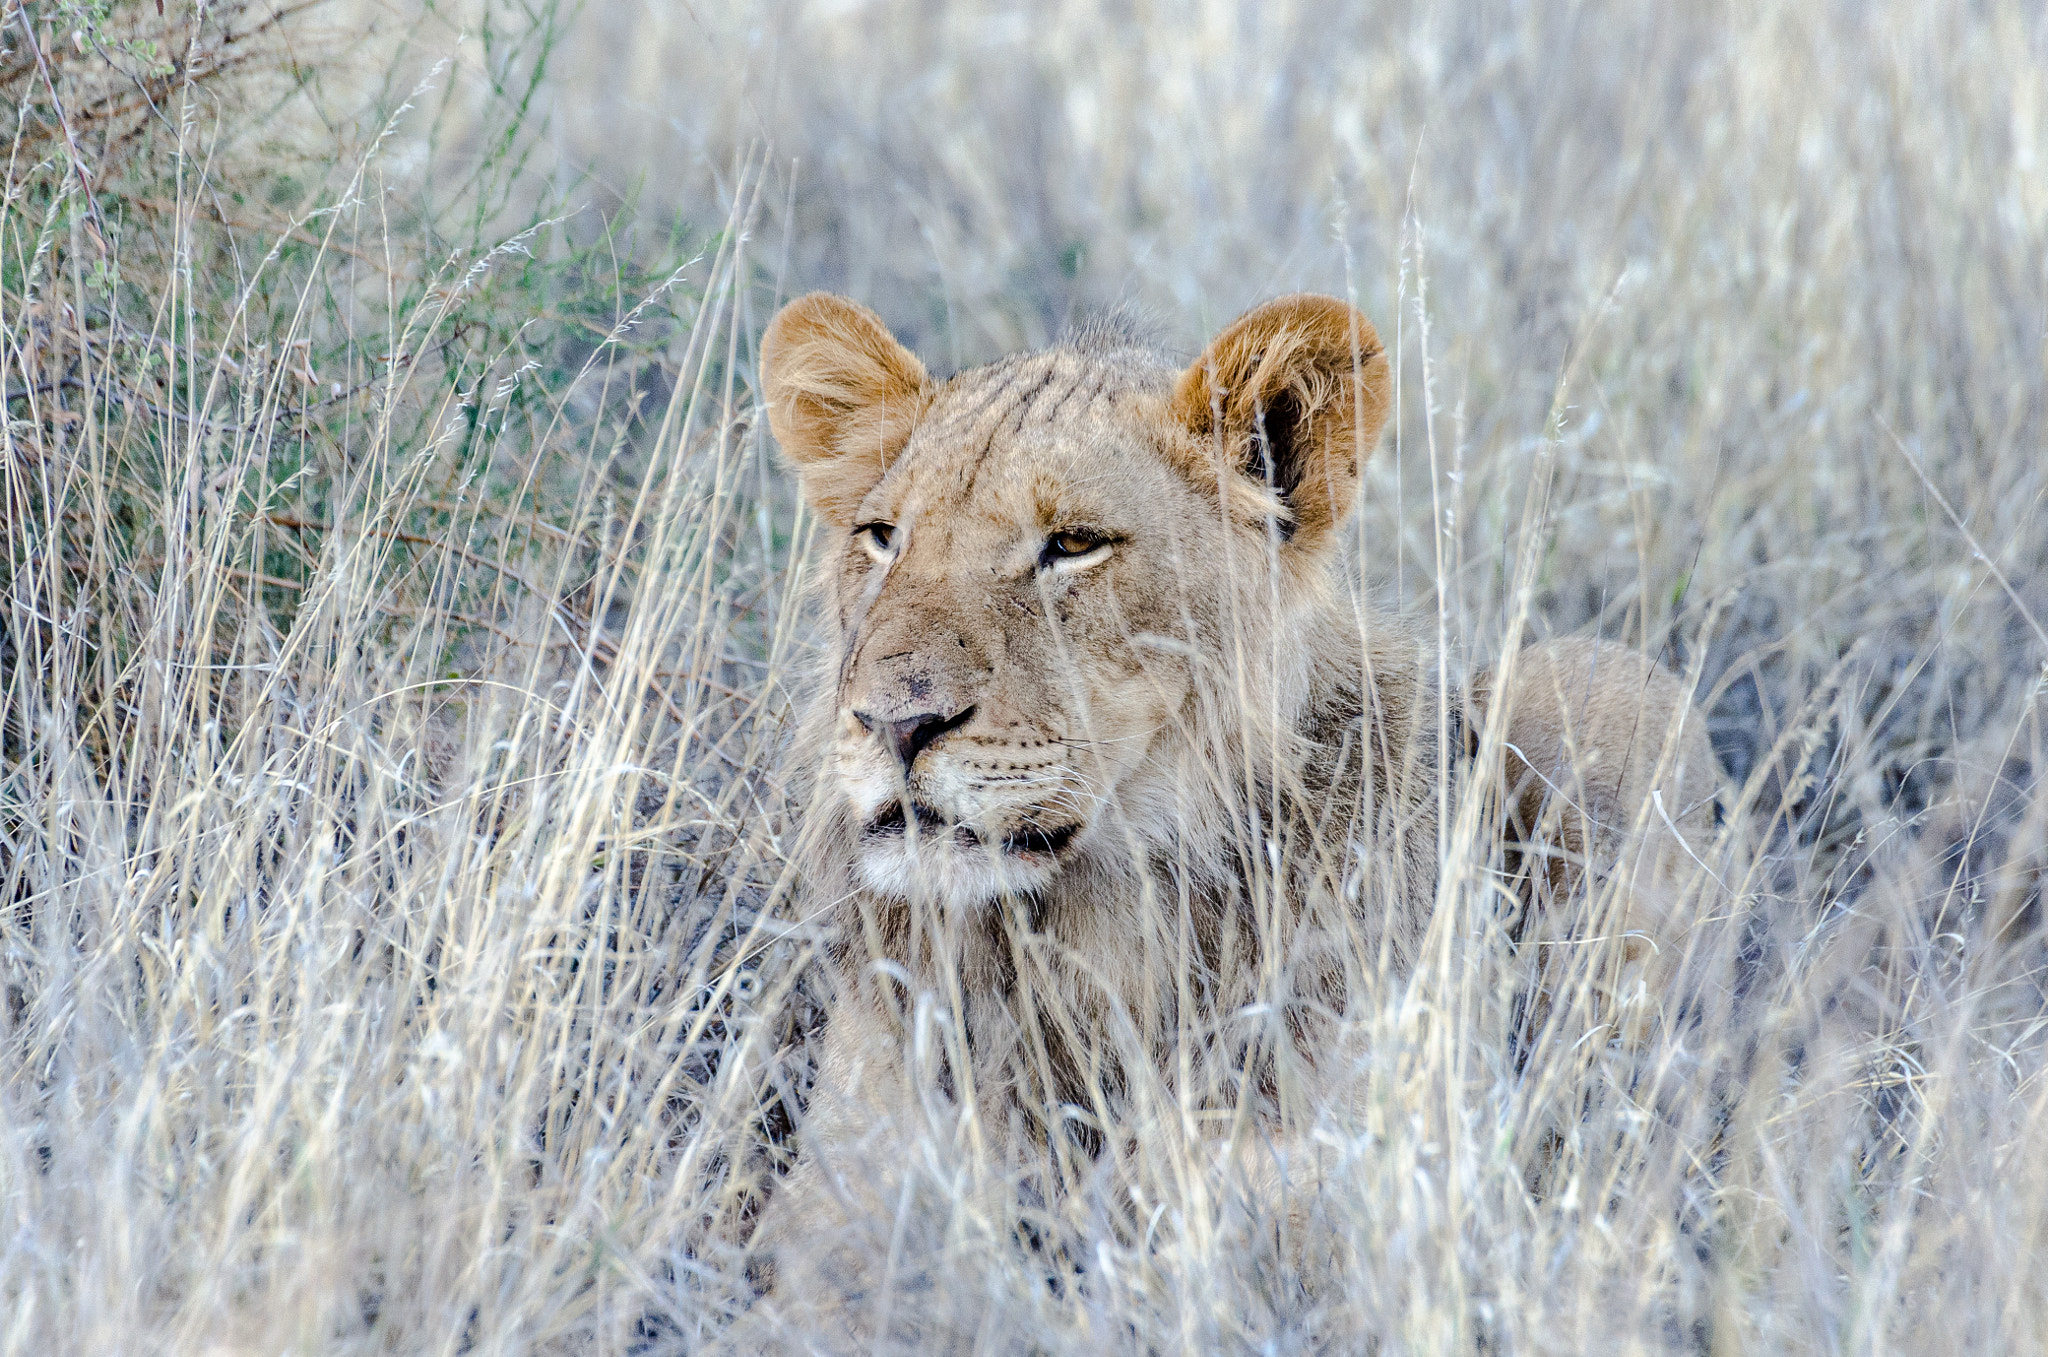 Nikon D7000 + Sigma 50-500mm F4.5-6.3 DG OS HSM sample photo. Kalahari lion photography